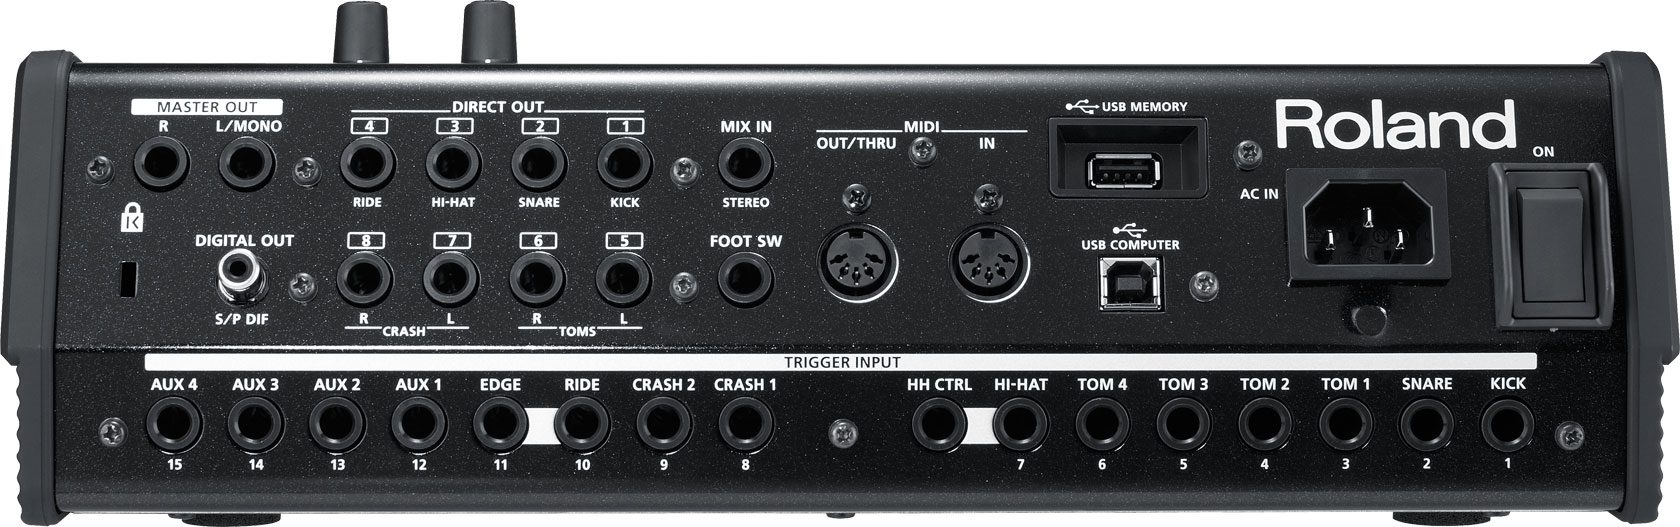 Roland - TD-30 | Drum Sound Module